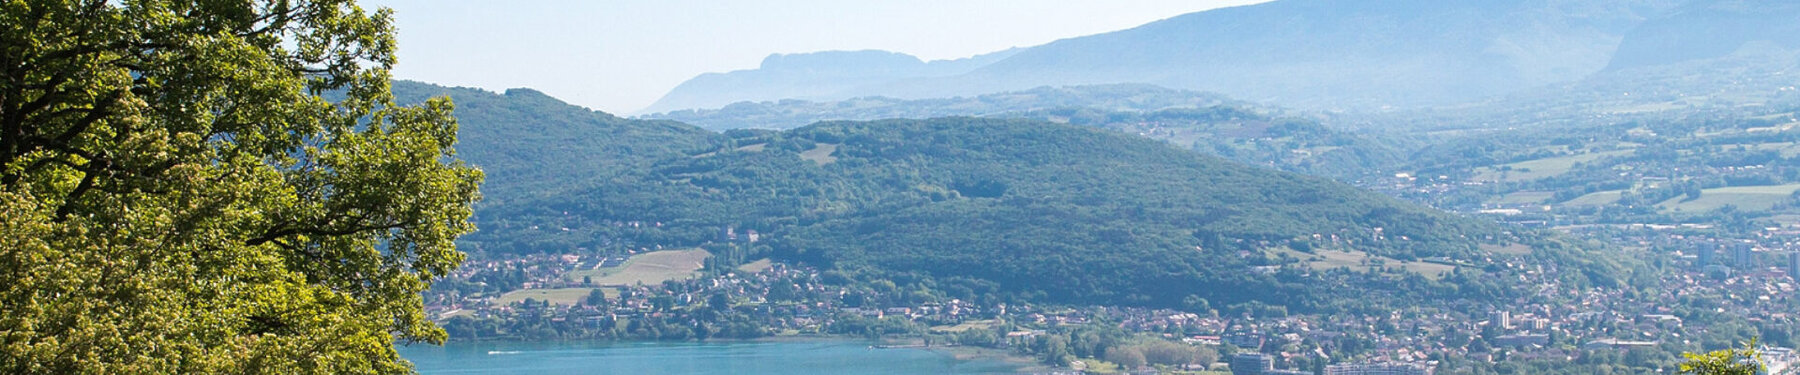 Programme immobilier Bati-Savoie Léman